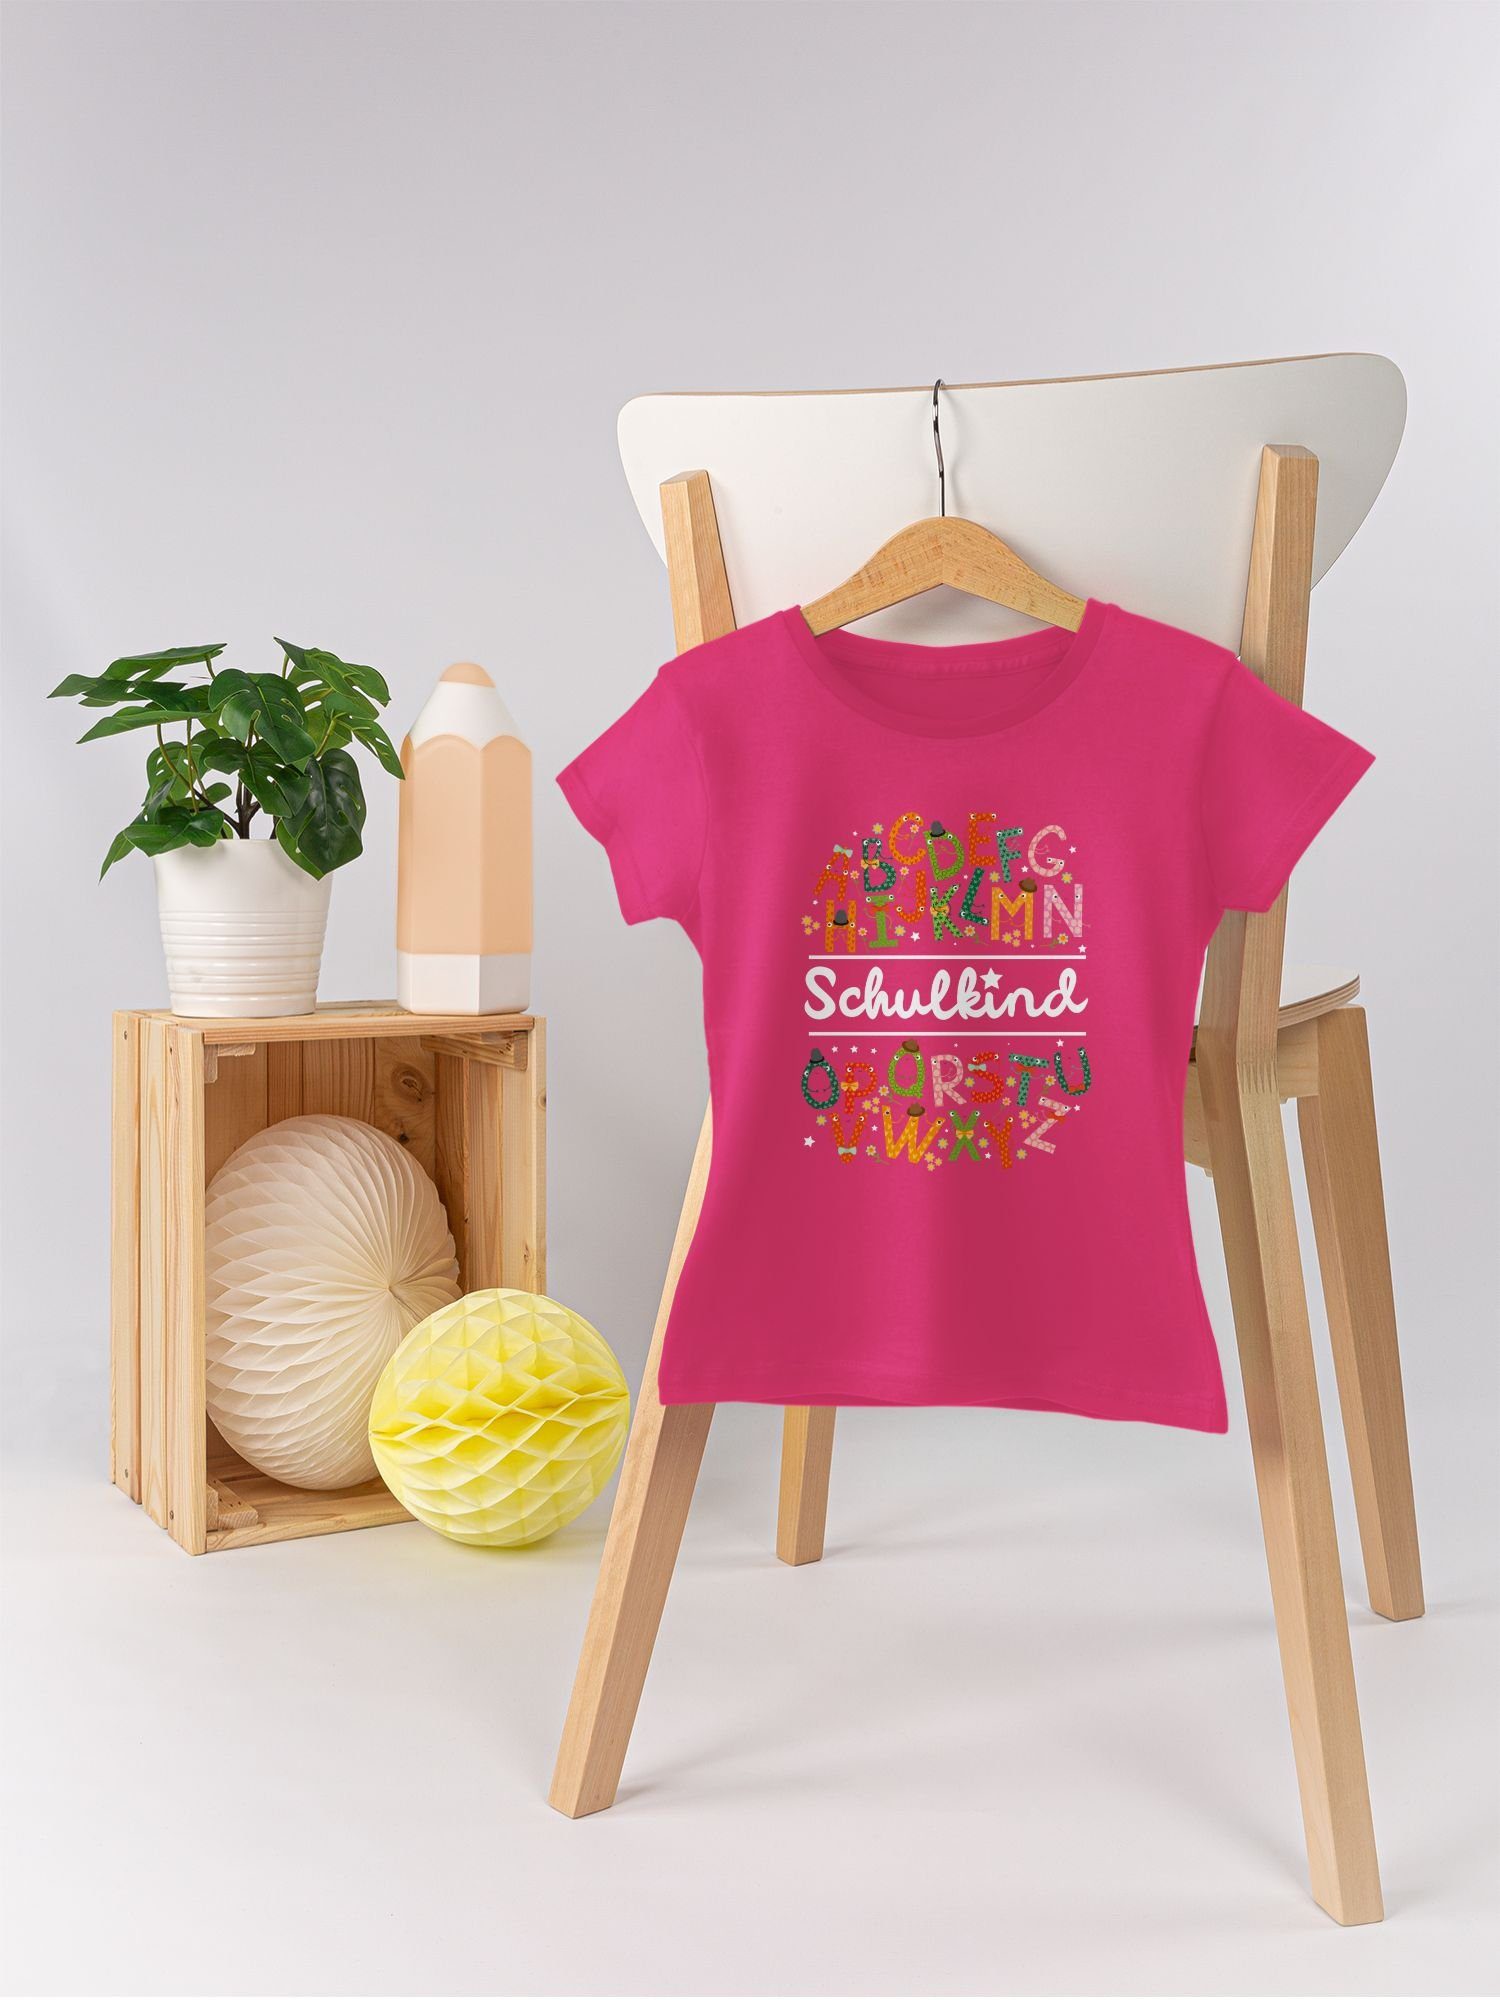 Shirtracer T-Shirt Mädchen Einschulung Alphabetmonster Fuchsia Schulkind 1